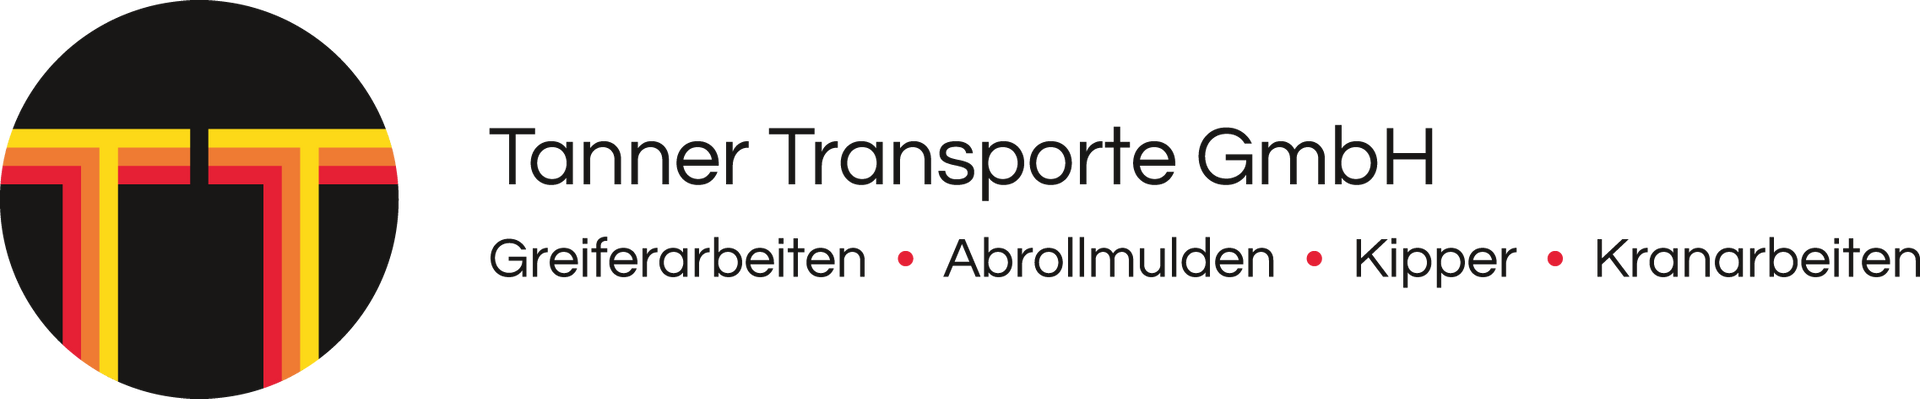 tanner transporte gmbh-logo